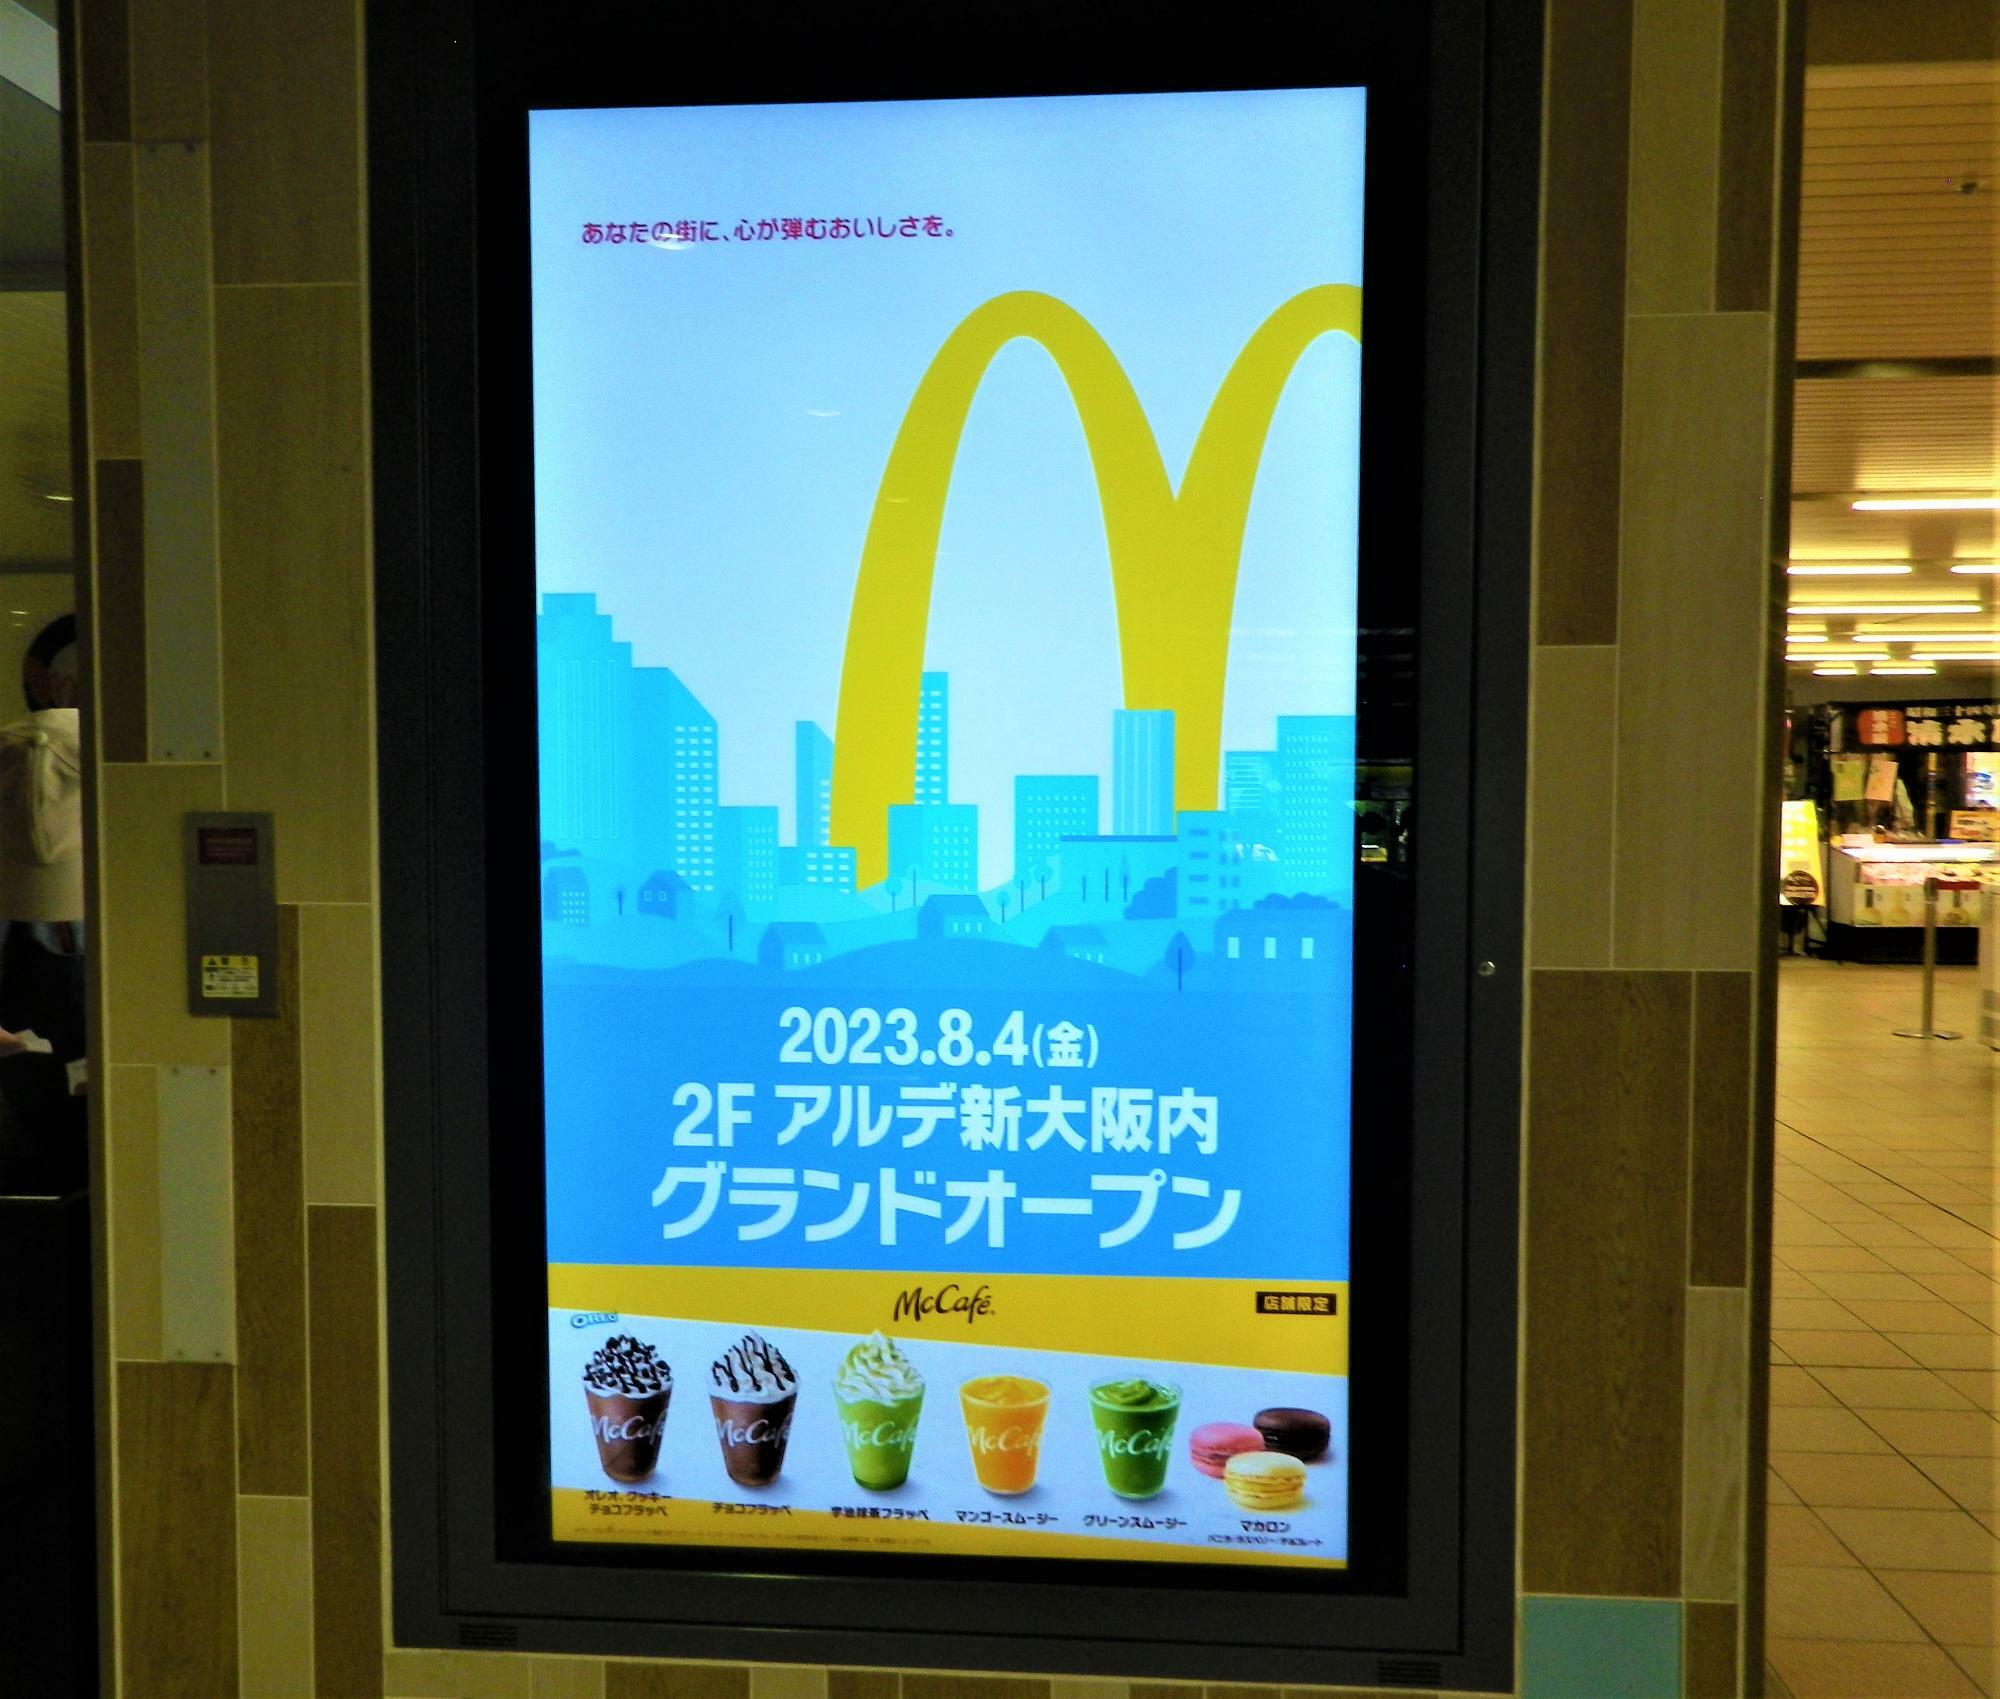 アルデ新大阪に掲示されているデジタル広告。